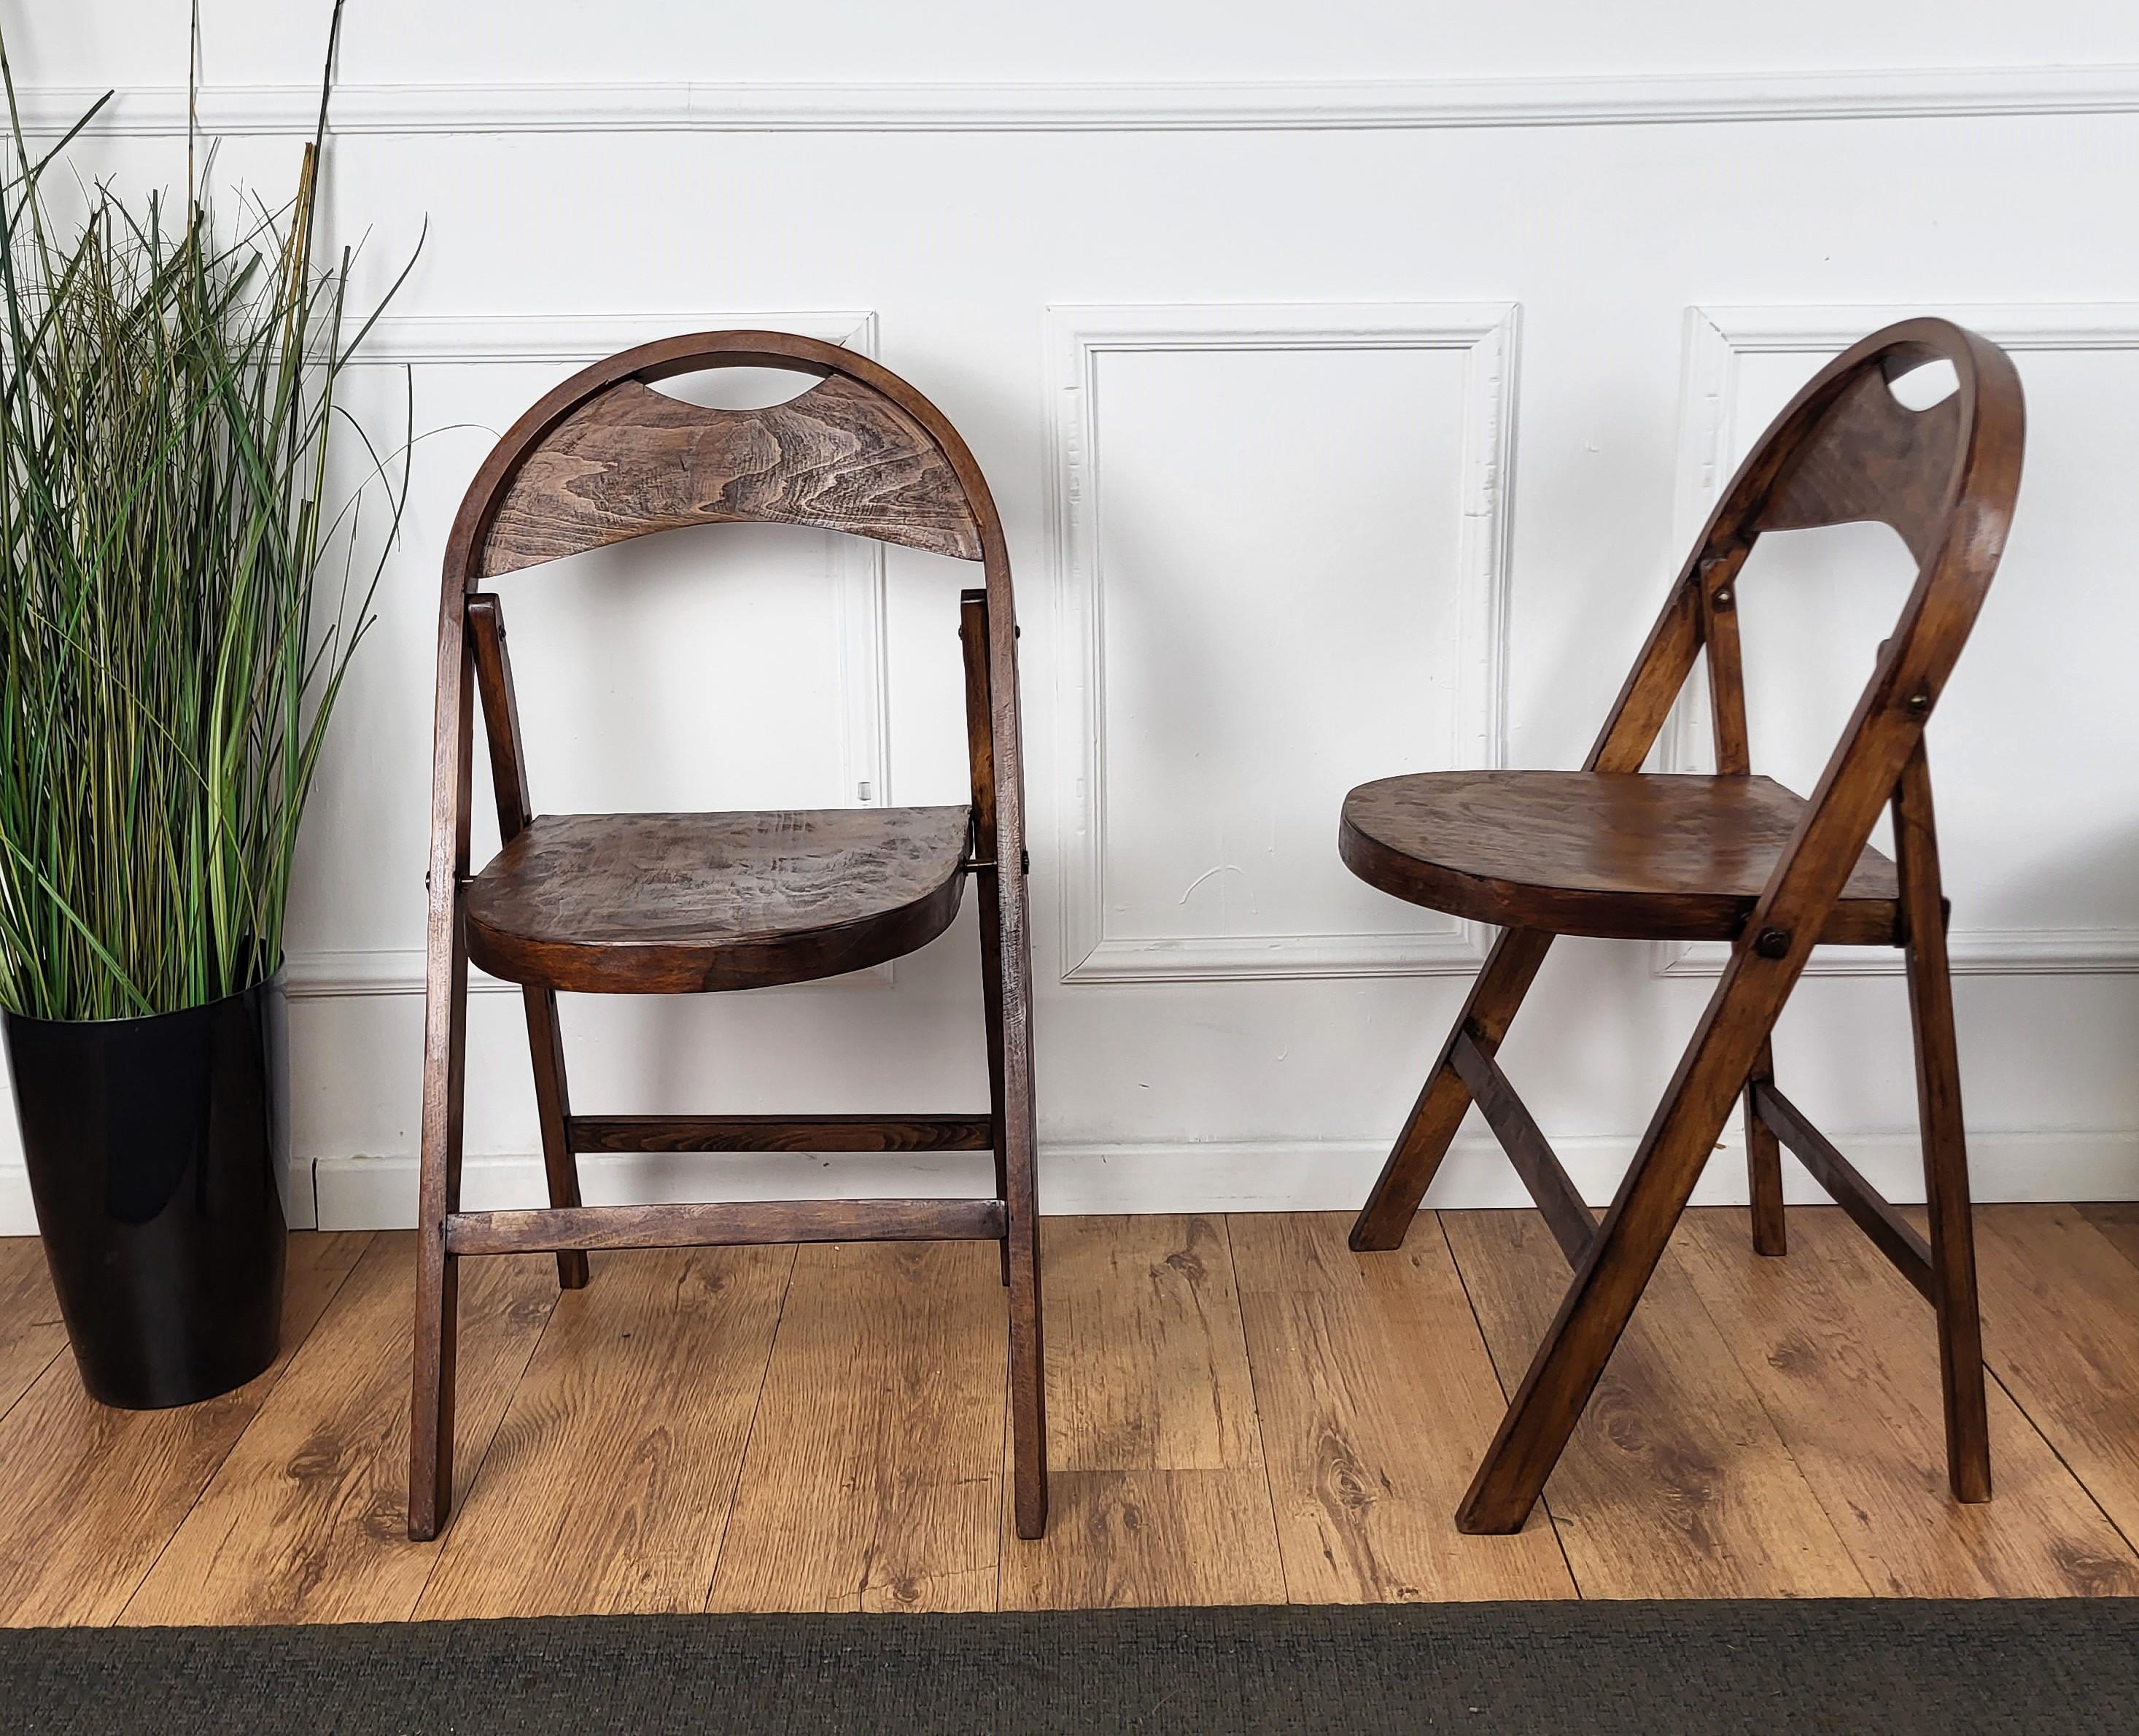 Ein Paar Klappstühle, Modell B751, entworfen zu Beginn des 20. Jahrhunderts von Thonet, hergestellt in den frühen 1960er Jahren in der Thonet-Fabrik in Radomsko (Zentralpolen). Die Stühle sind in gutem Zustand, ohne größere Gebrauchsspuren.